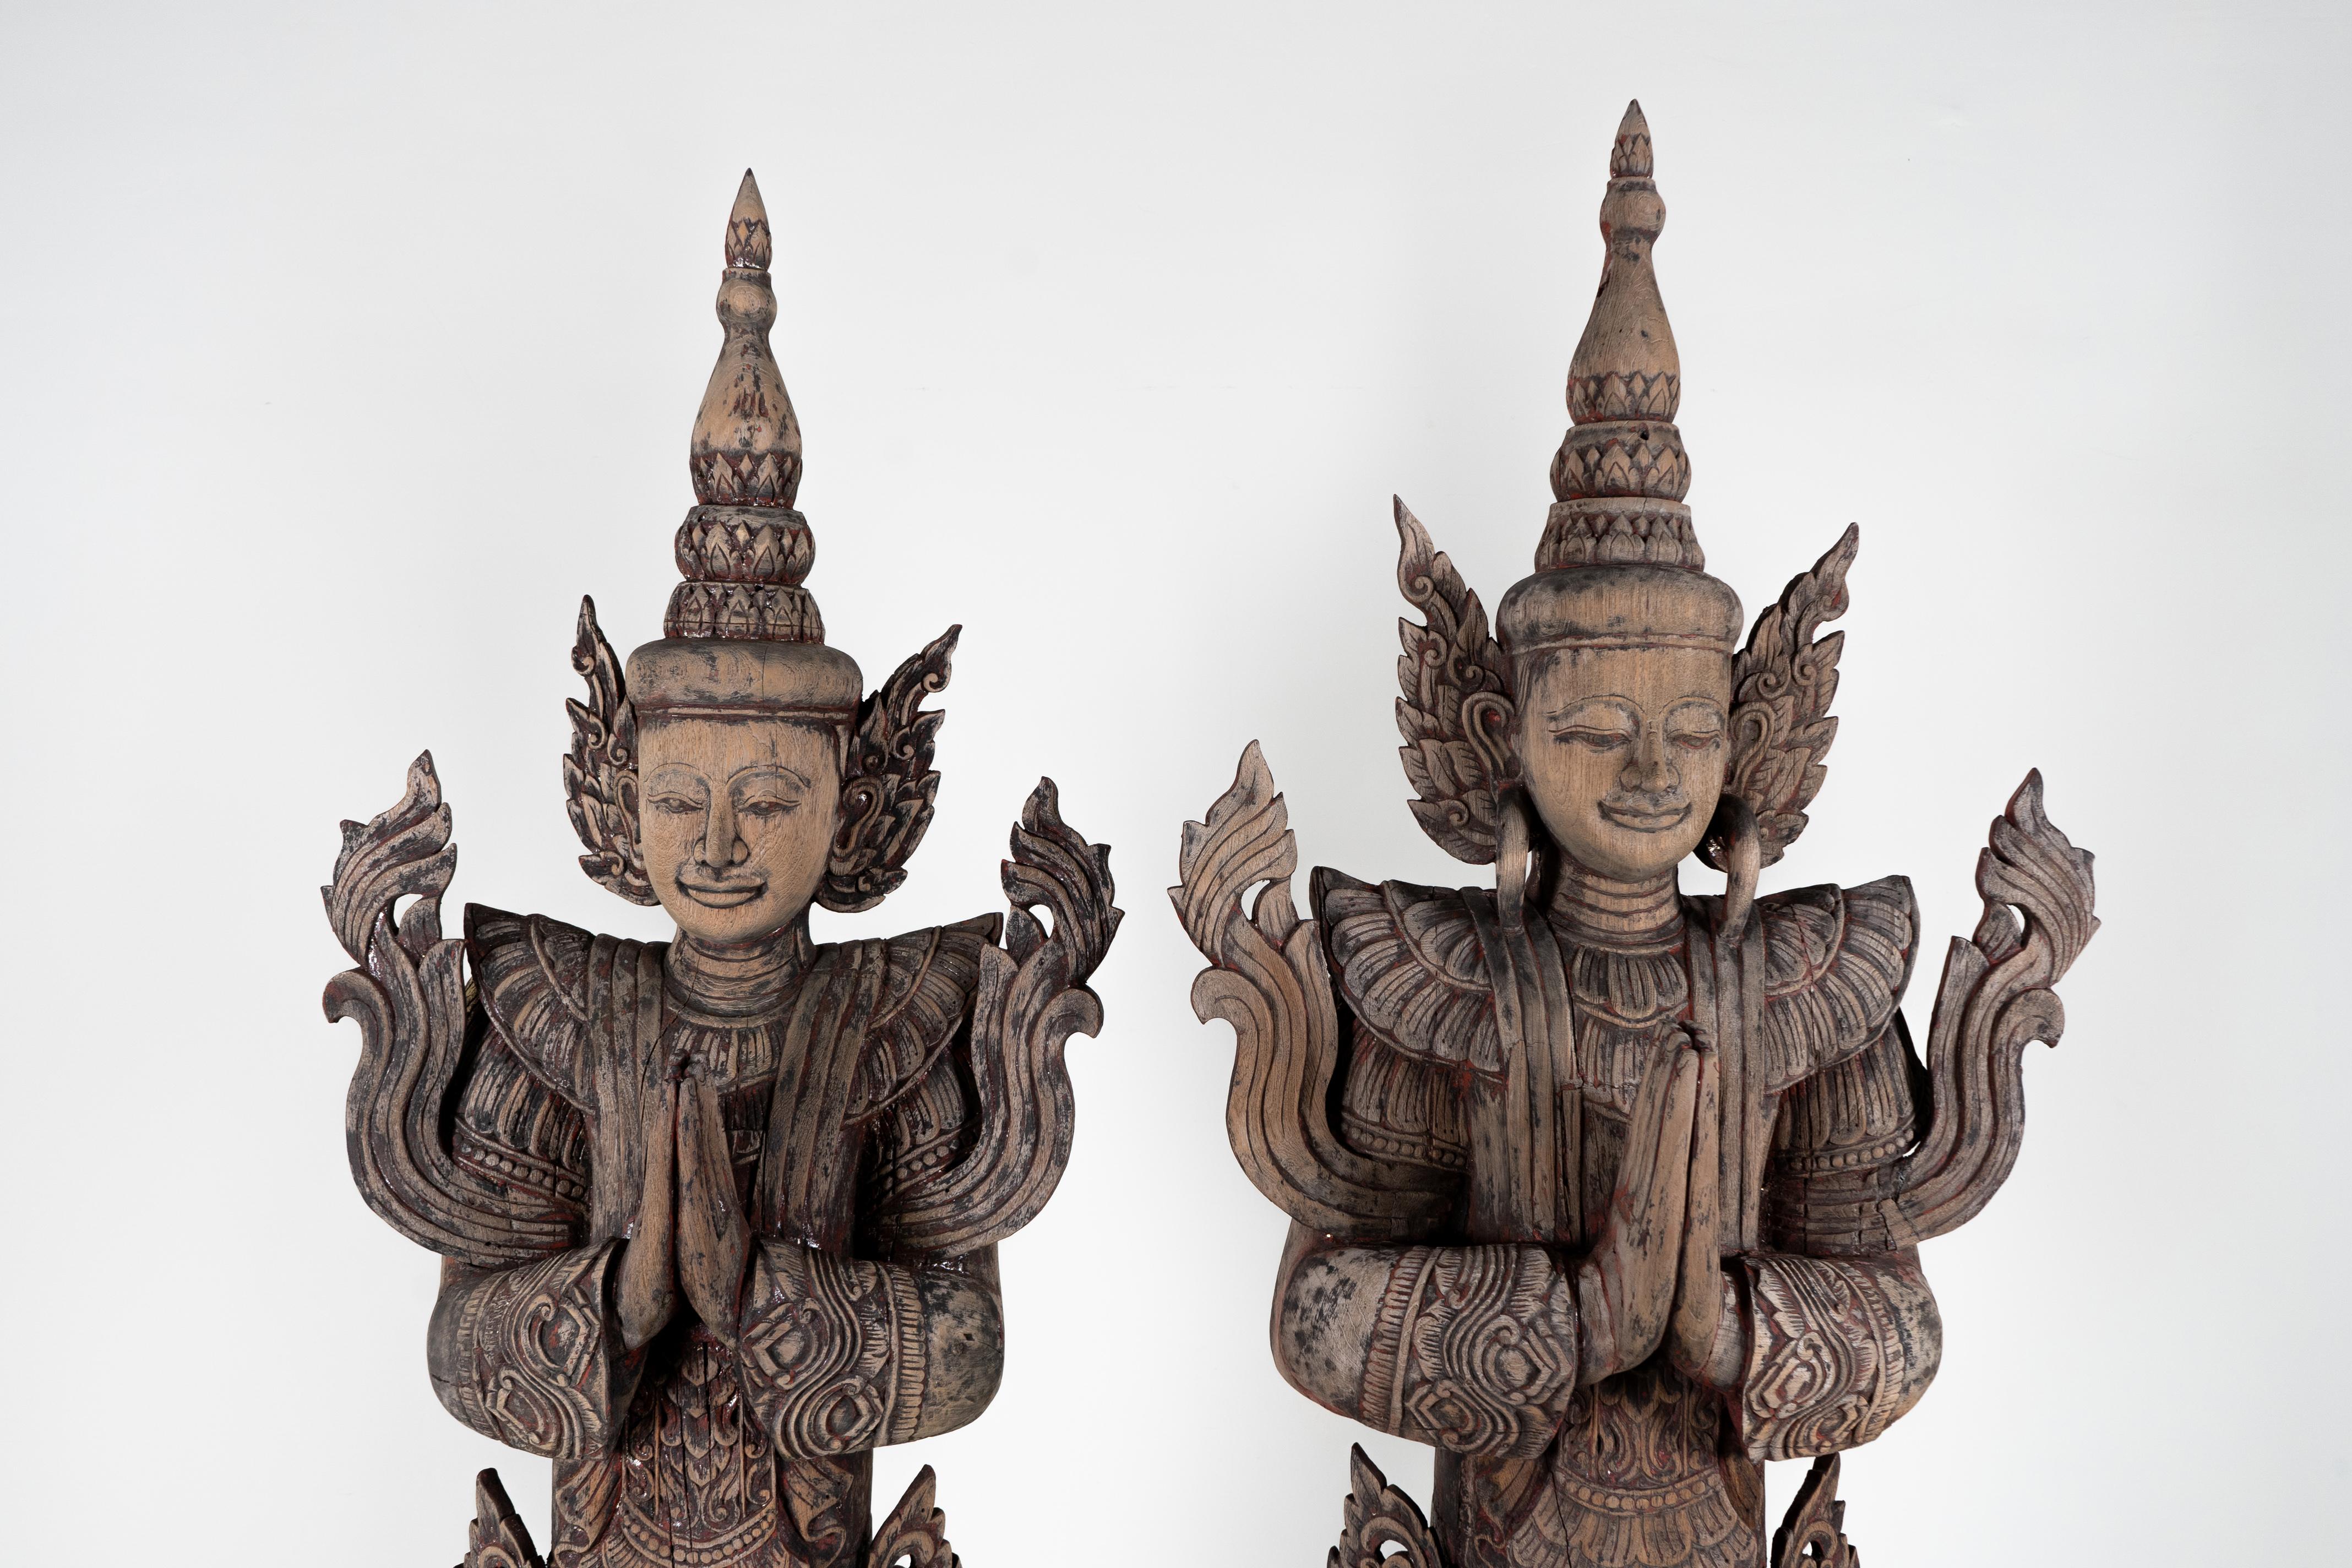 Les temples thaïlandais présentent souvent différentes sortes de figures sculptées, notamment des bouddhas et des anges. Ce grand ensemble d'anges en bois s'inspire des sculptures qui flanquaient généralement les autels ou les entrées. Les